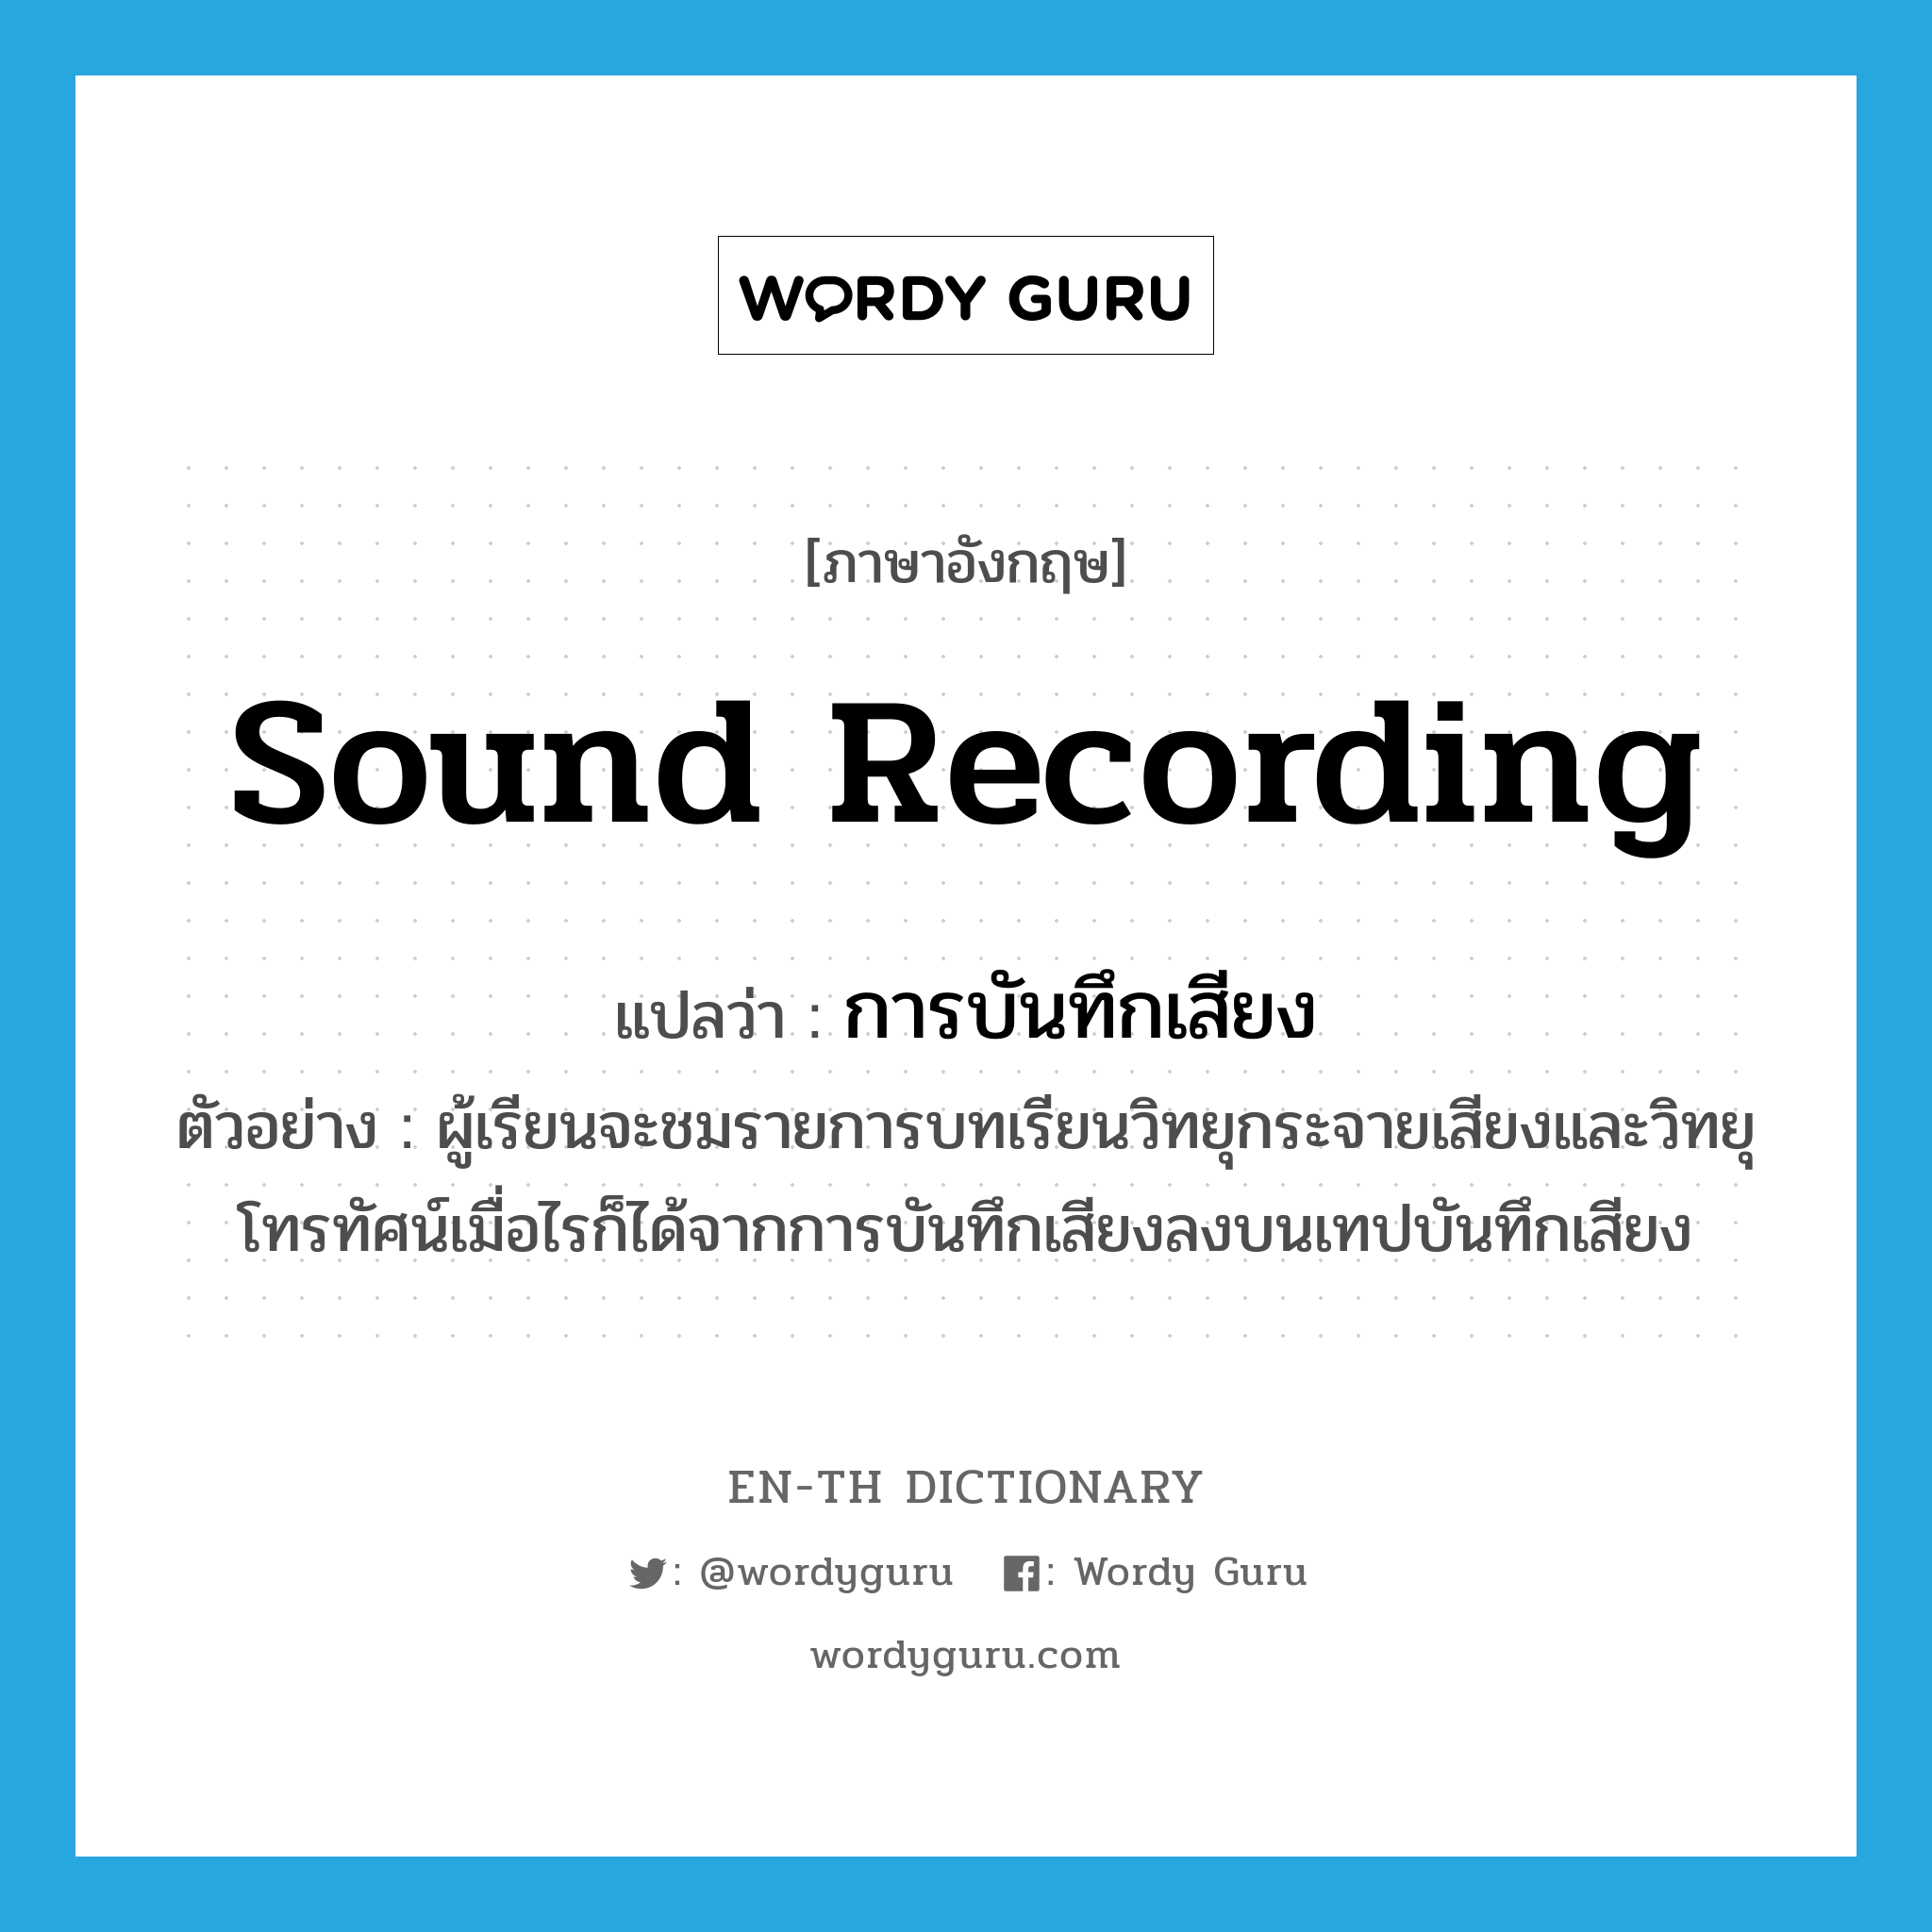 sound recording แปลว่า?, คำศัพท์ภาษาอังกฤษ sound recording แปลว่า การบันทึกเสียง ประเภท N ตัวอย่าง ผู้เรียนจะชมรายการบทเรียนวิทยุกระจายเสียงและวิทยุโทรทัศน์เมื่อไรก็ได้จากการบันทึกเสียงลงบนเทปบันทึกเสียง หมวด N